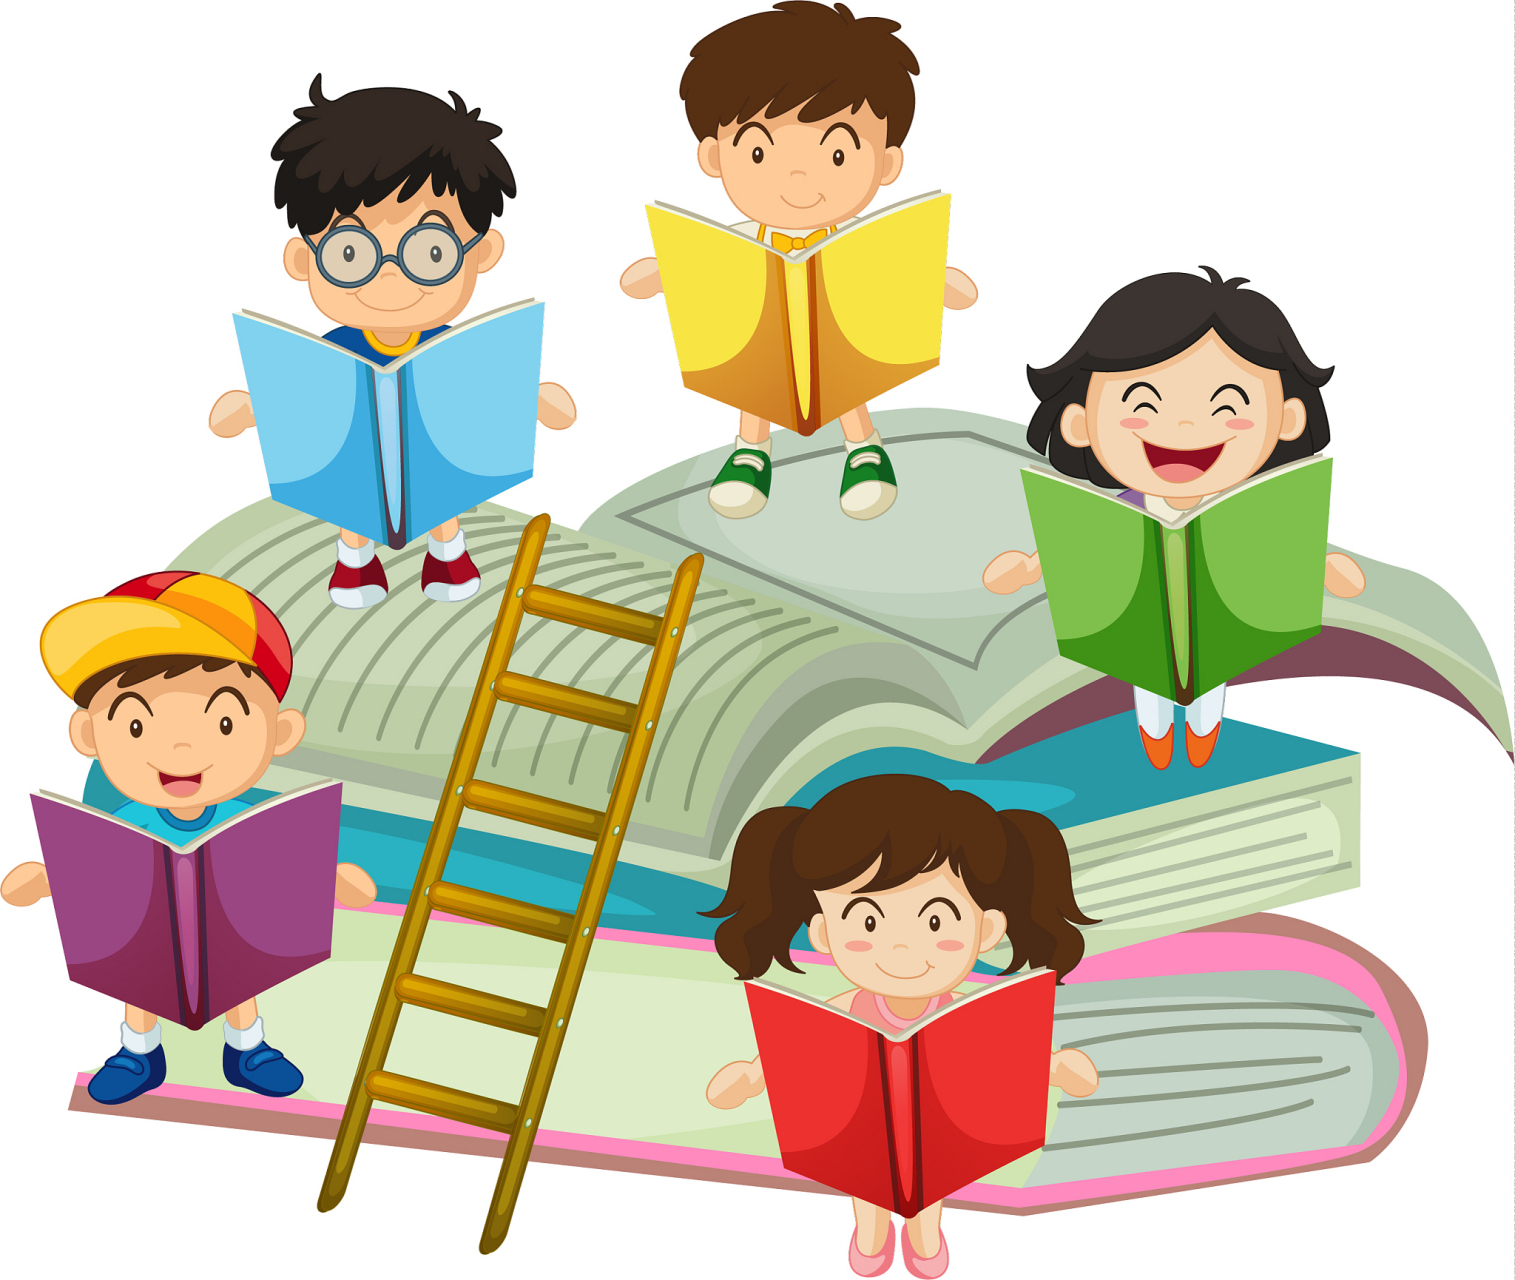 各类书 玩法: 一,选择书宝宝 家长每次和宝宝看书时,要引导宝宝爱护